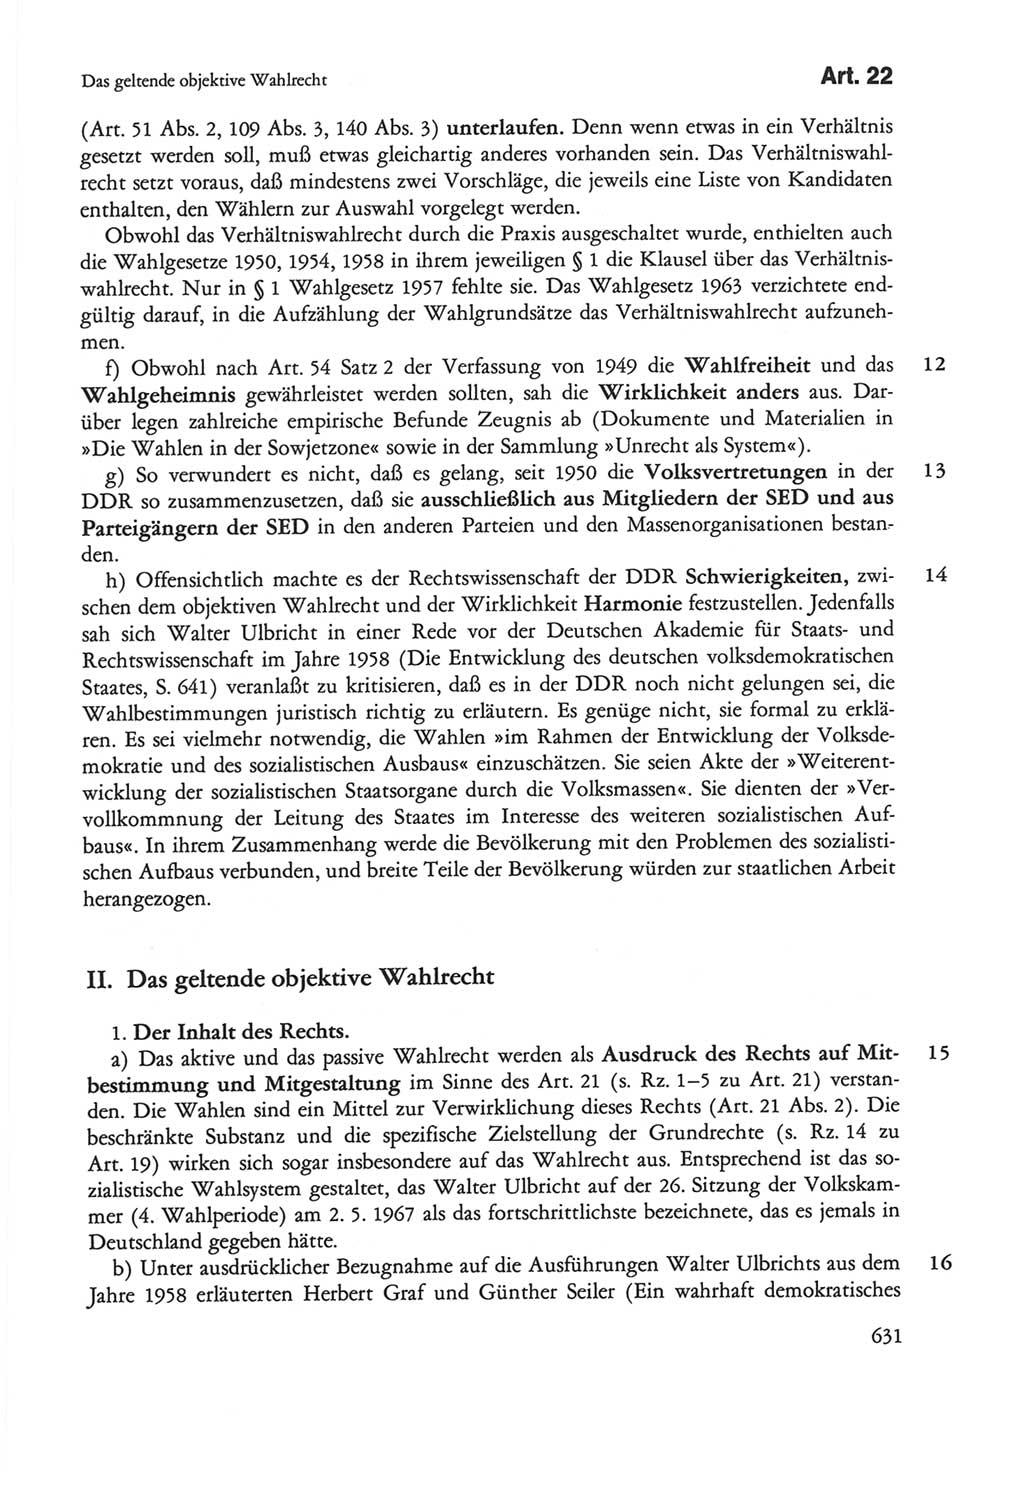 Die sozialistische Verfassung der Deutschen Demokratischen Republik (DDR), Kommentar mit einem Nachtrag 1997, Seite 631 (Soz. Verf. DDR Komm. Nachtr. 1997, S. 631)